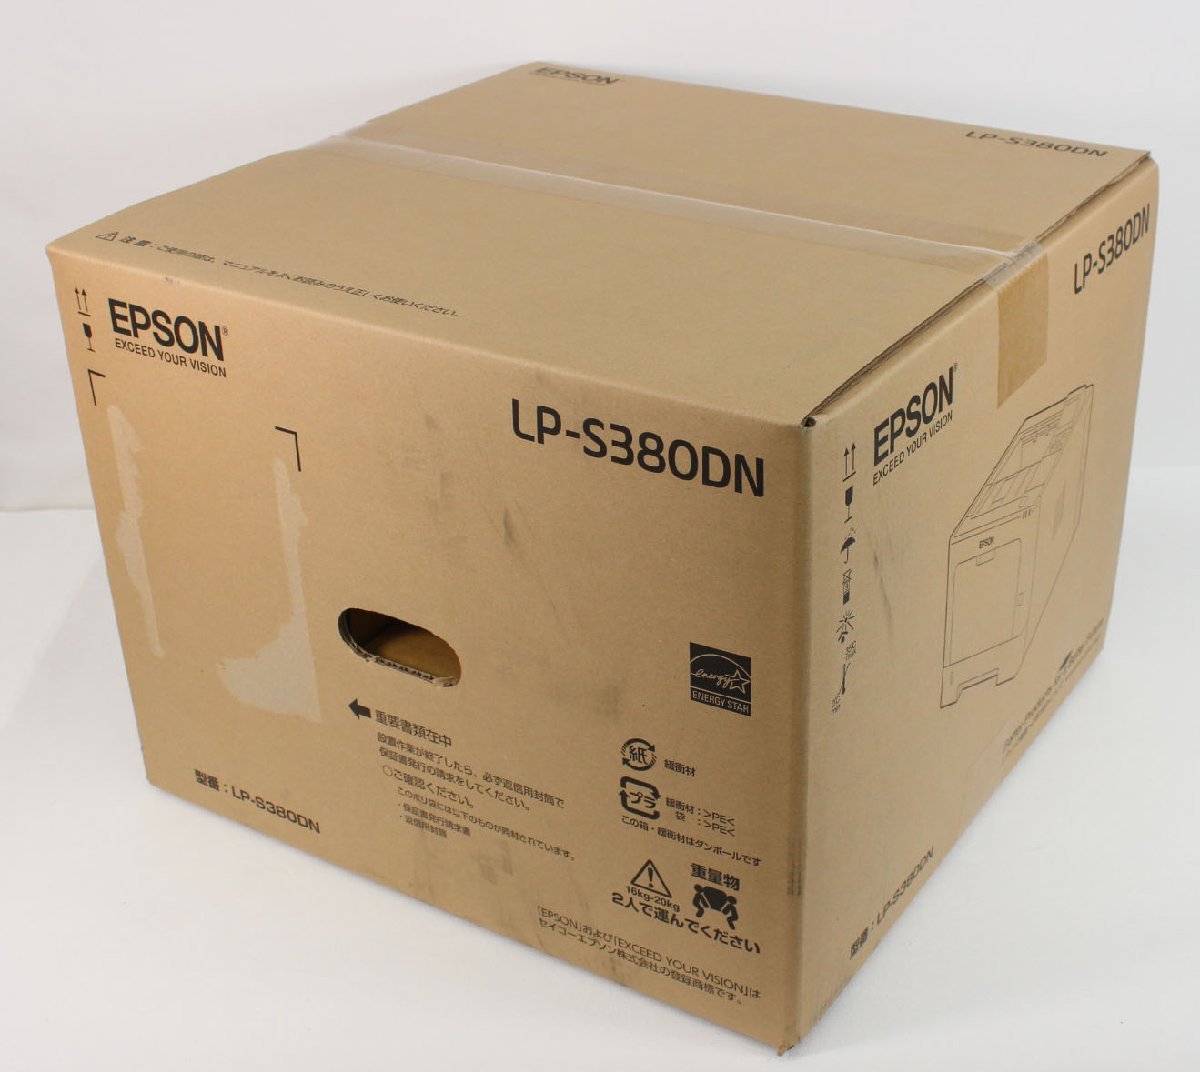 ◇未開封品◇ EPSON エプソン LP-S380DN A4モノクロページプリンタ